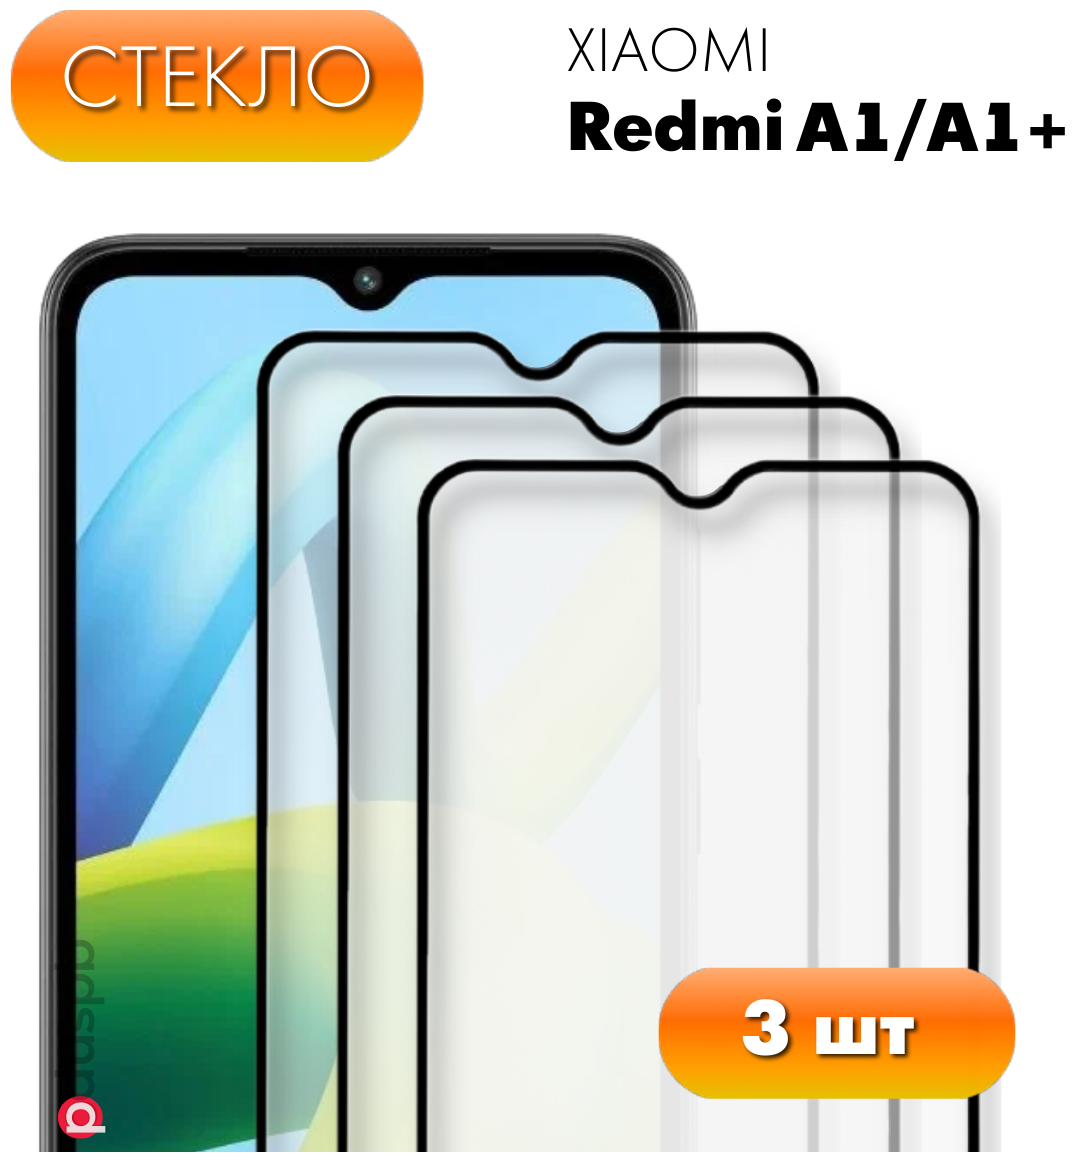 Комплект 3 в 1: Защитное стекло (3 шт.) для Xiaomi Redmi A1/ A1+. Полноэкранное стекло для Ксиоми Редми А1/А1 плюс